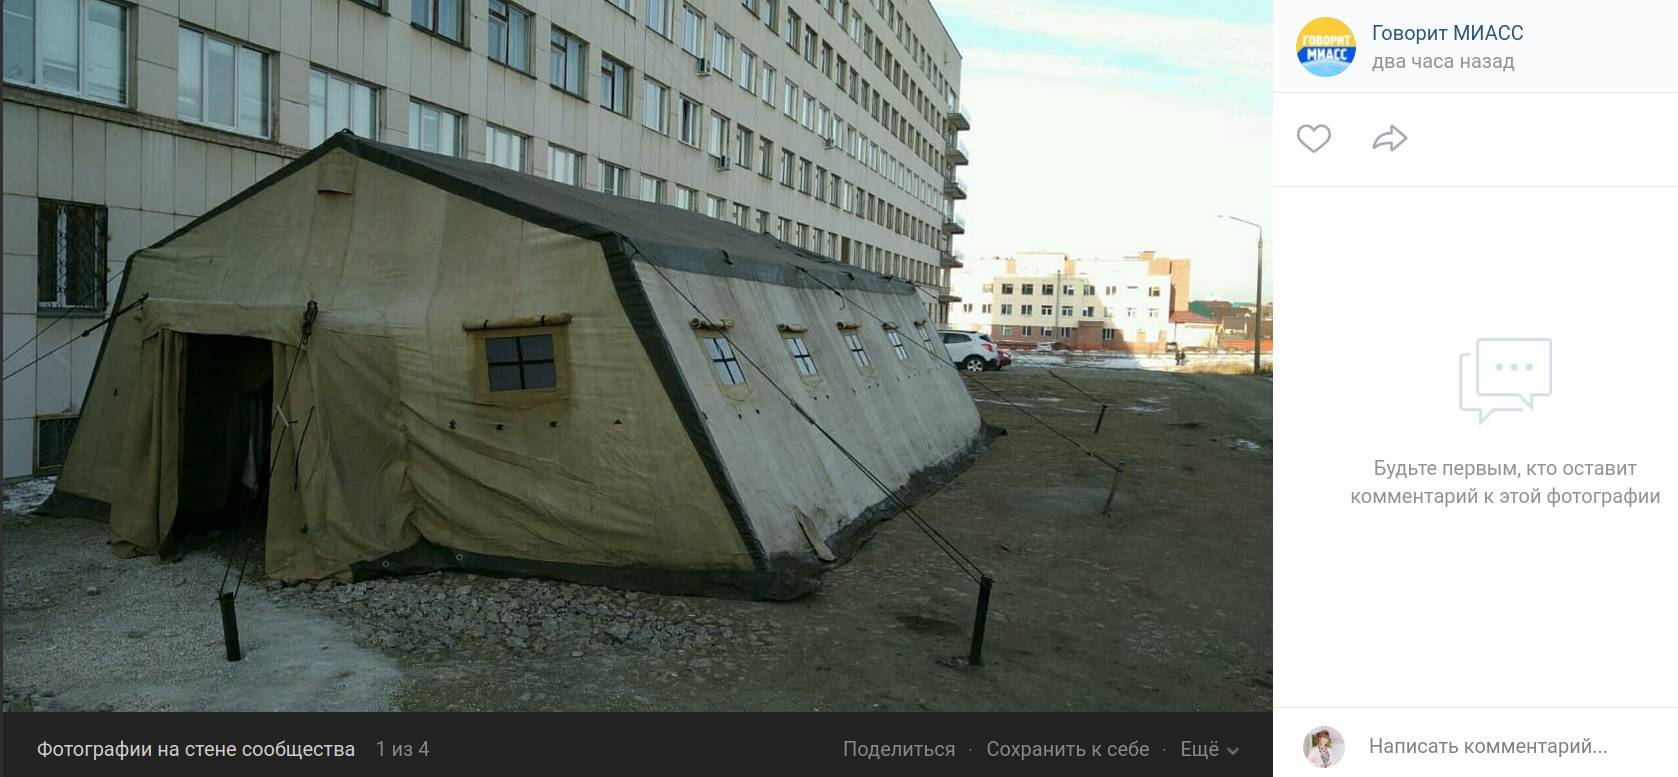 Армейская палатка возле больницы в Миассе